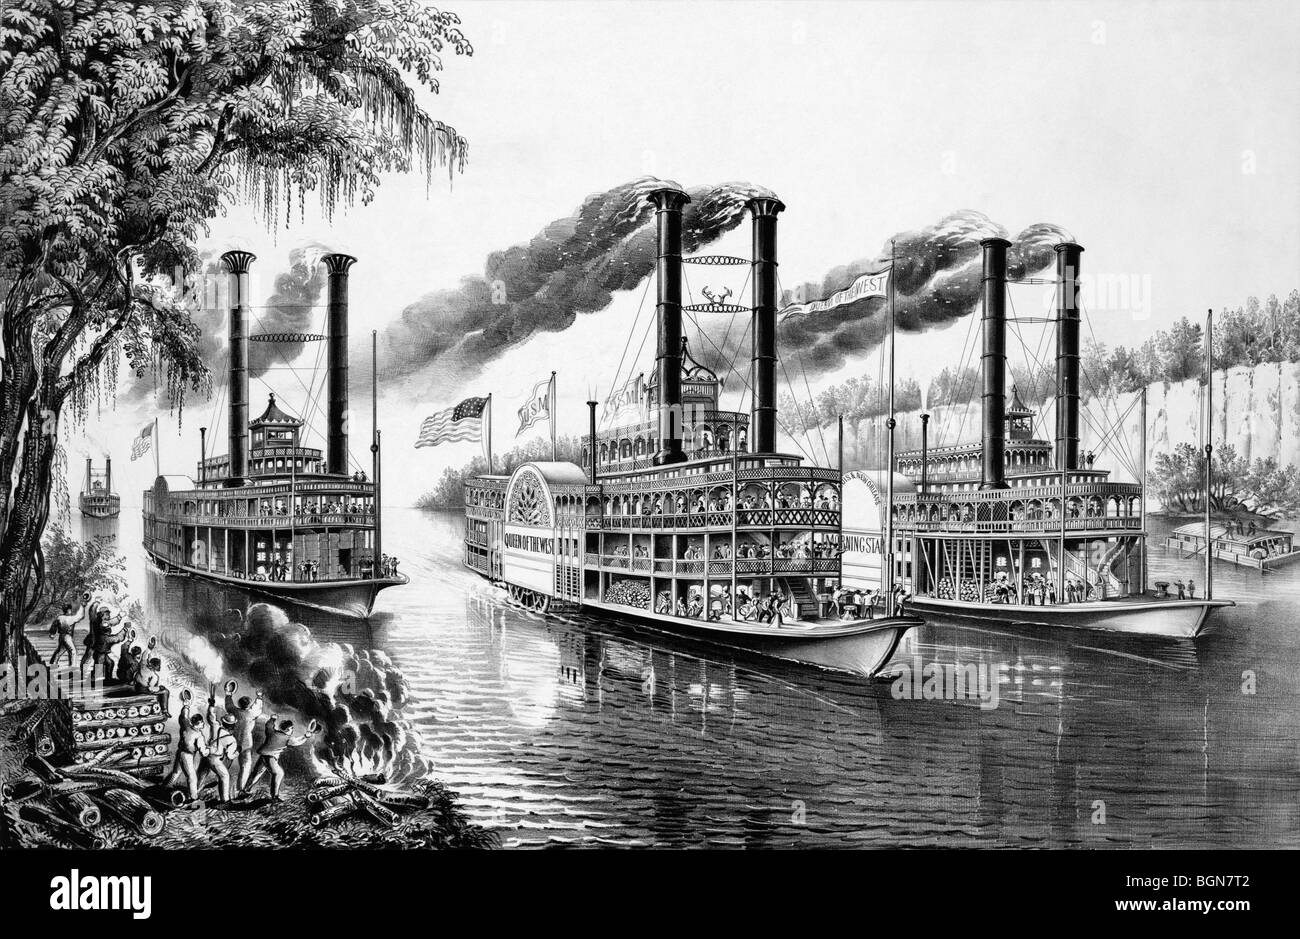 Imprimer intitulée "Les Champions du Mississippi - une course pour l'Buckhorns" et représentant des courses de bateaux à vapeur le long de la rivière. Banque D'Images